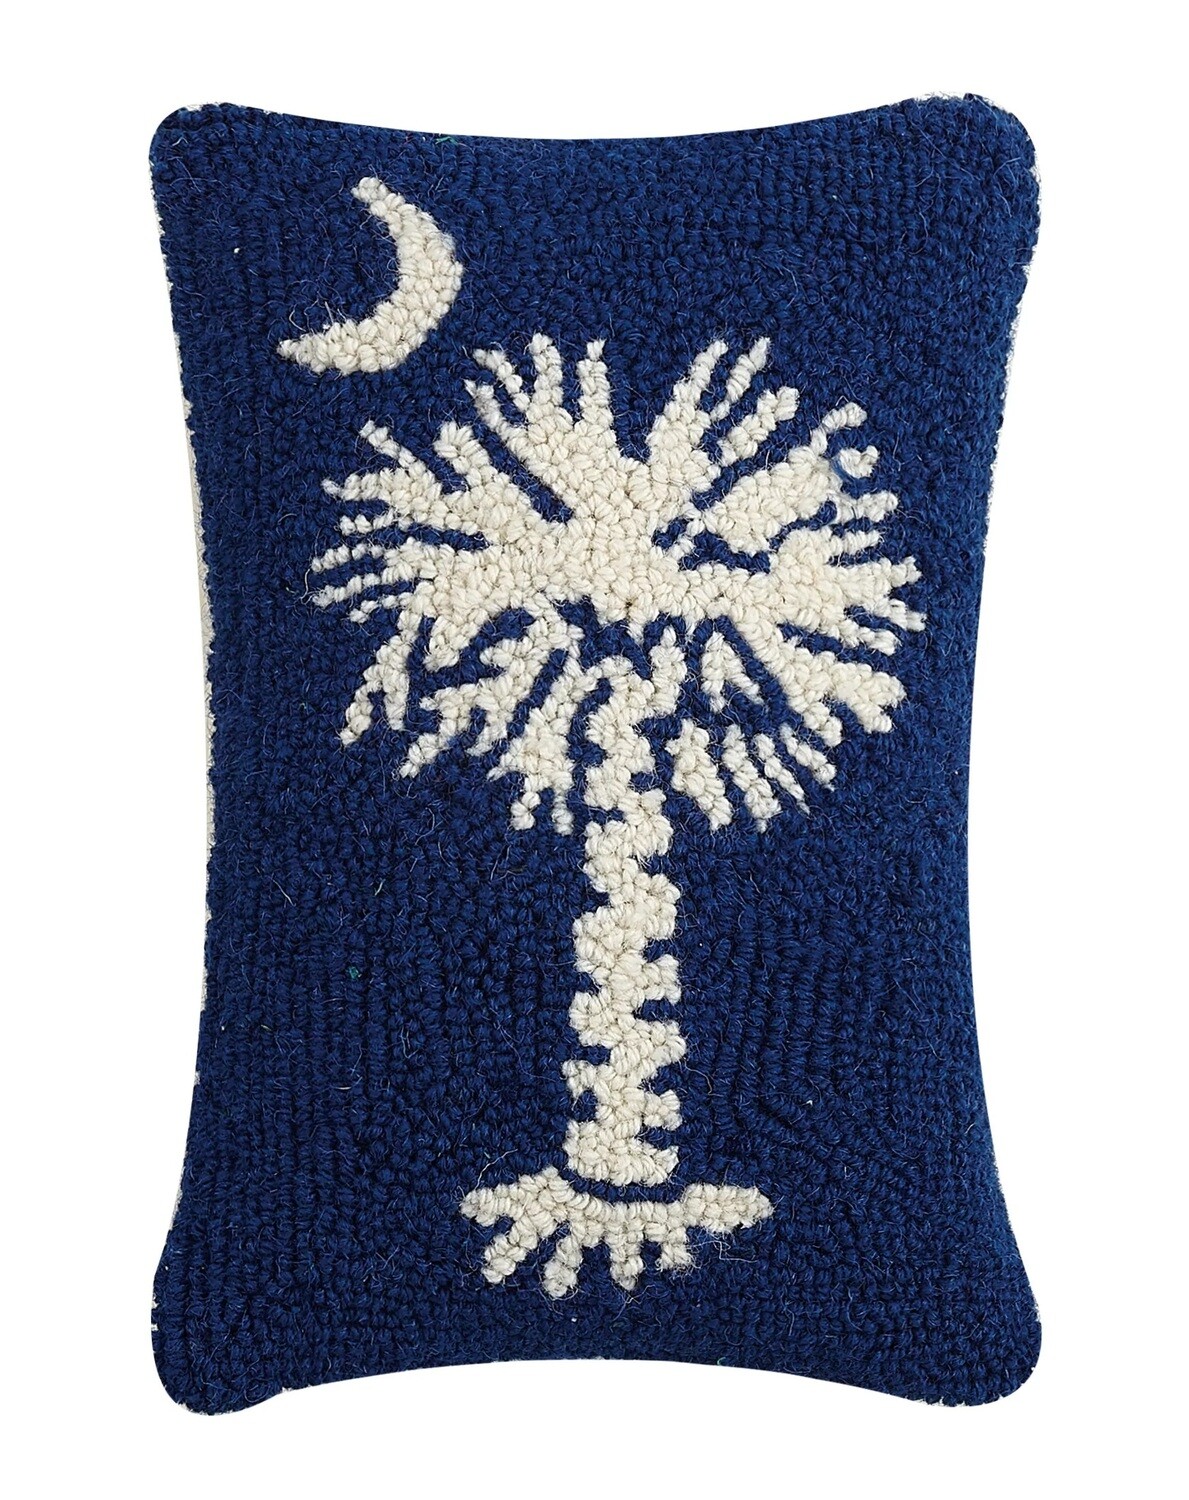 Pillow - South Carolina State Flag Blue - 8x12